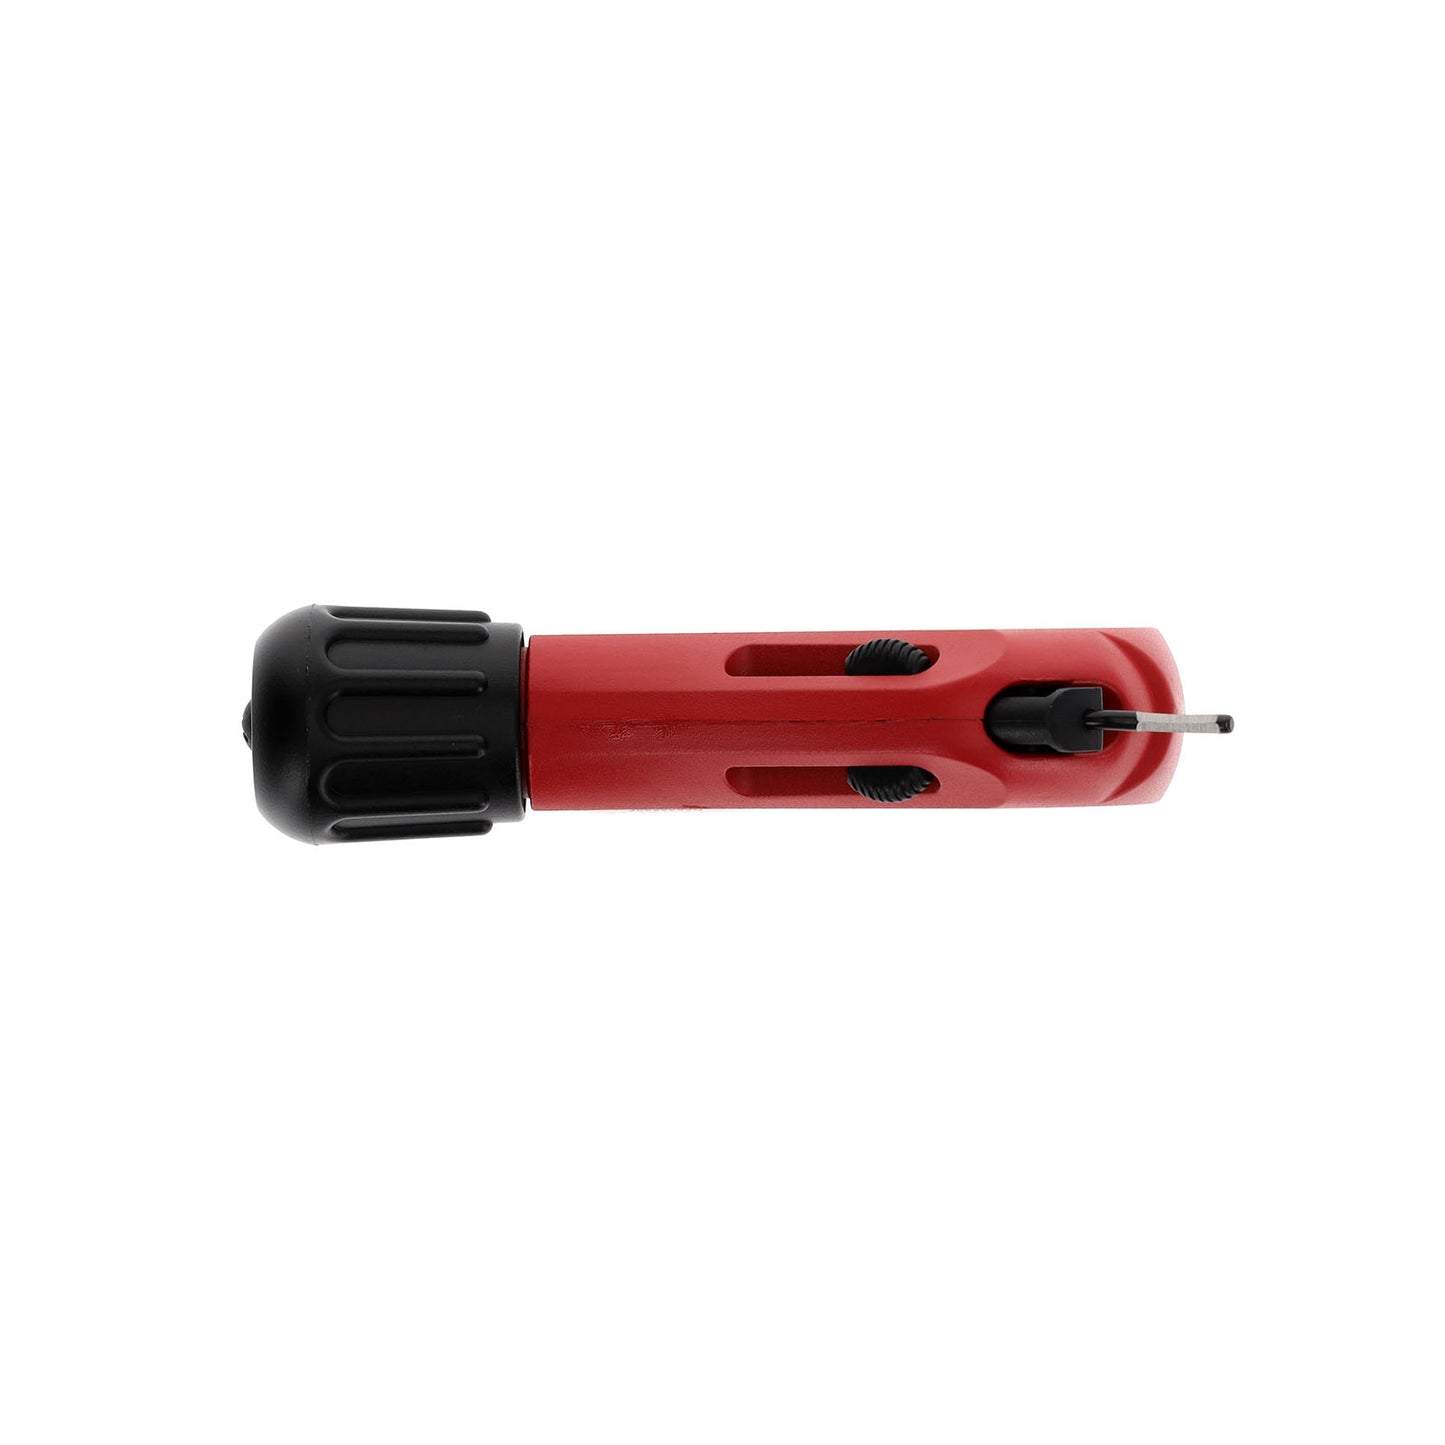 GEDORE red R93600035 - Cortatubos para tubos de cobre Ø 3-35 mm (3301617)